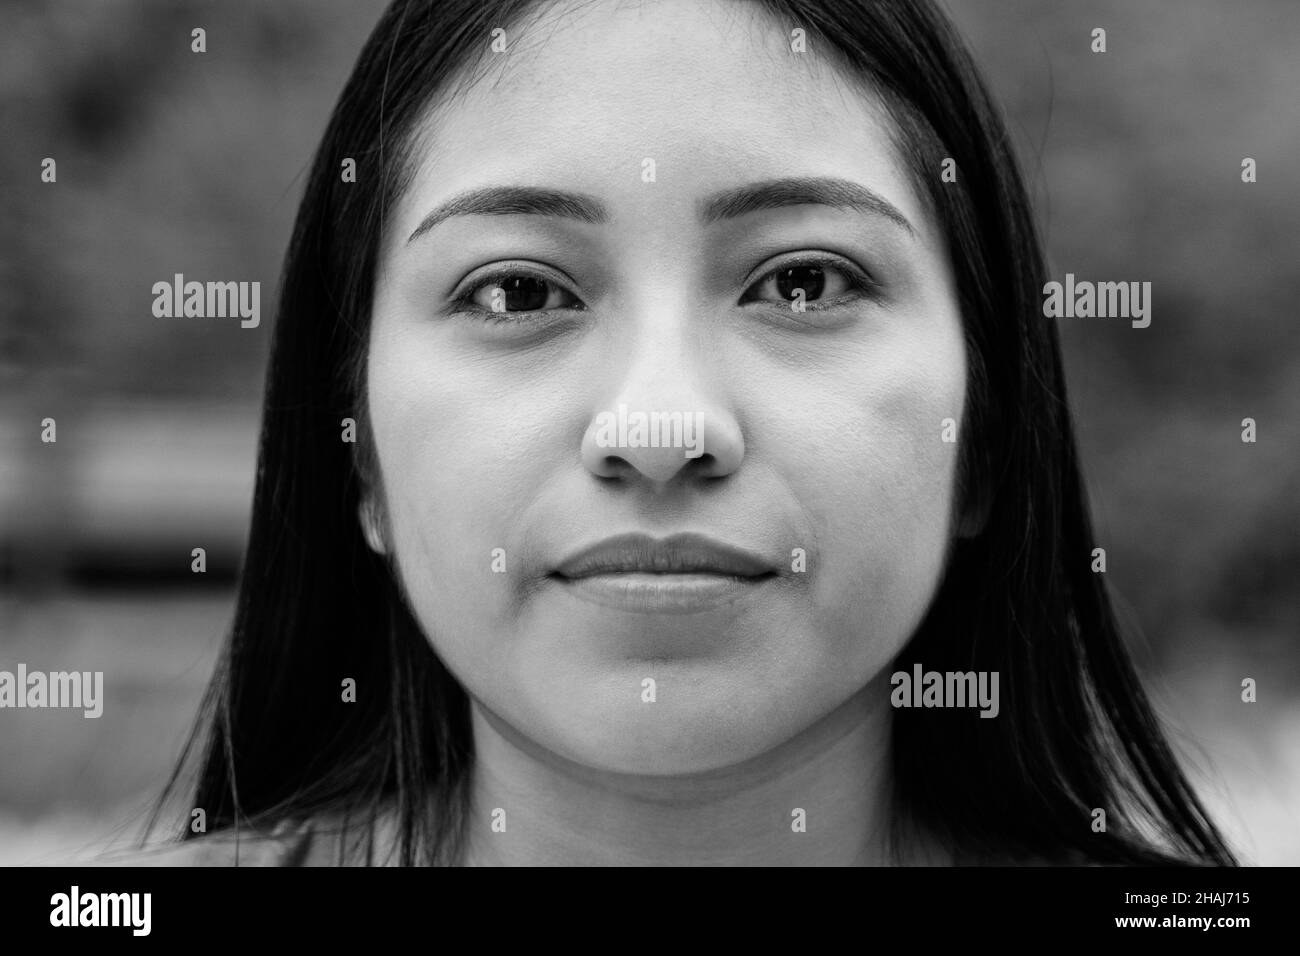 Giovane donna asiatica che guarda seriamente con la fotocamera - Focus sul volto Foto Stock